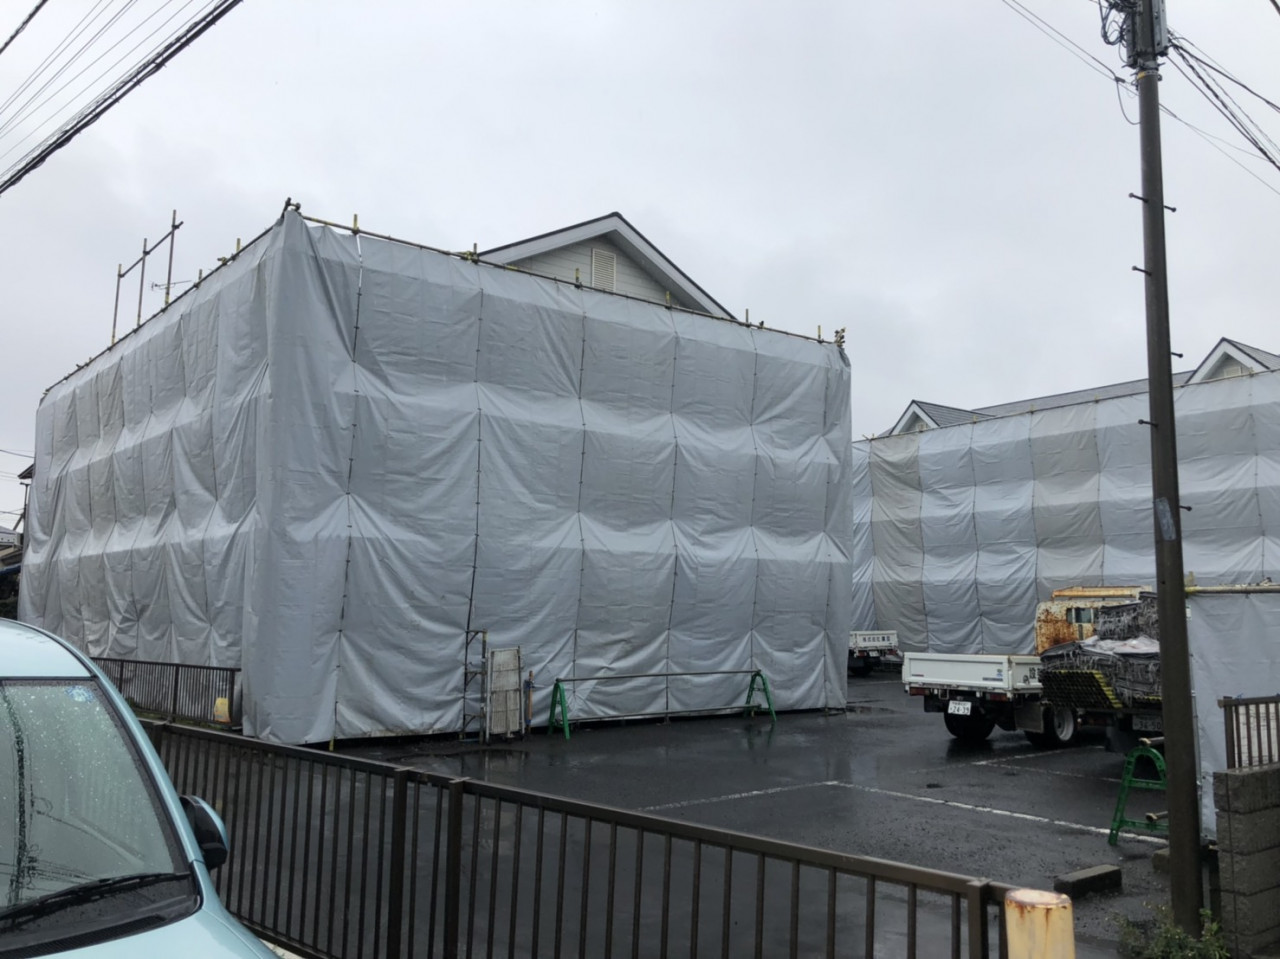 大和市の解体工事現場で解体養生をしました 神奈川で足場工事のご依頼を承っている株式会社副島架設のブログについて